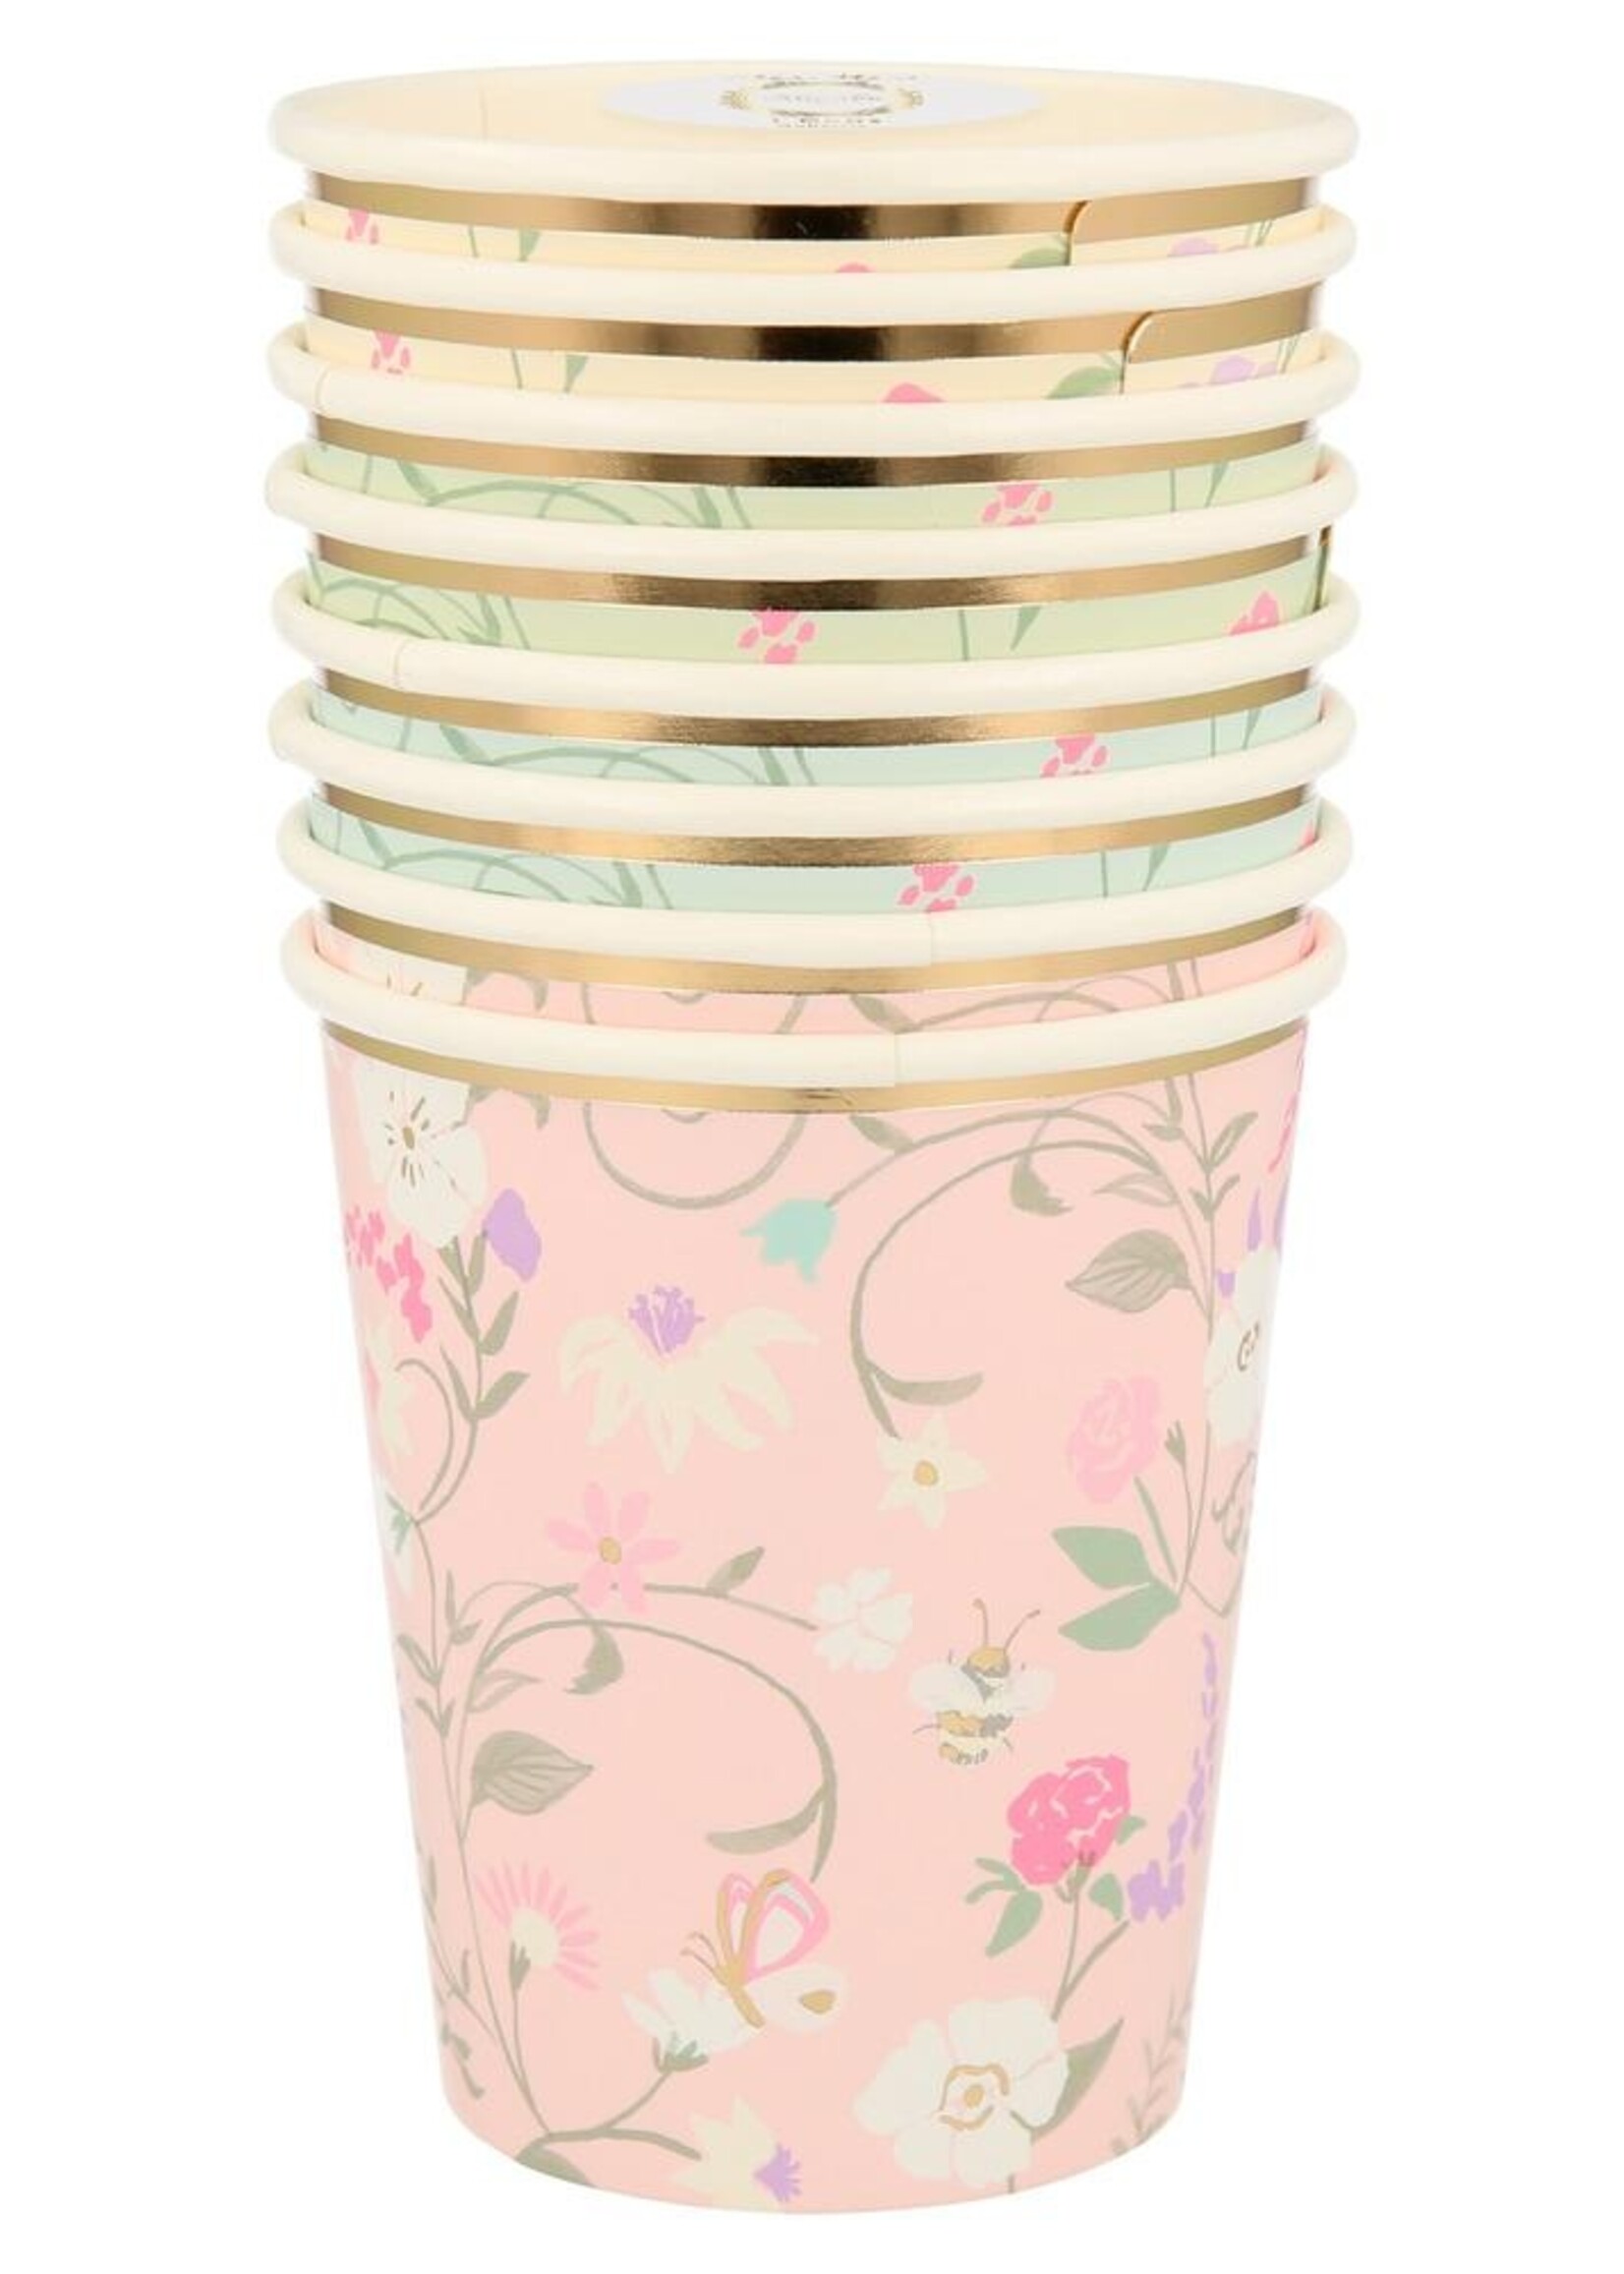 Meri Meri Laduree Paris Floral Cups